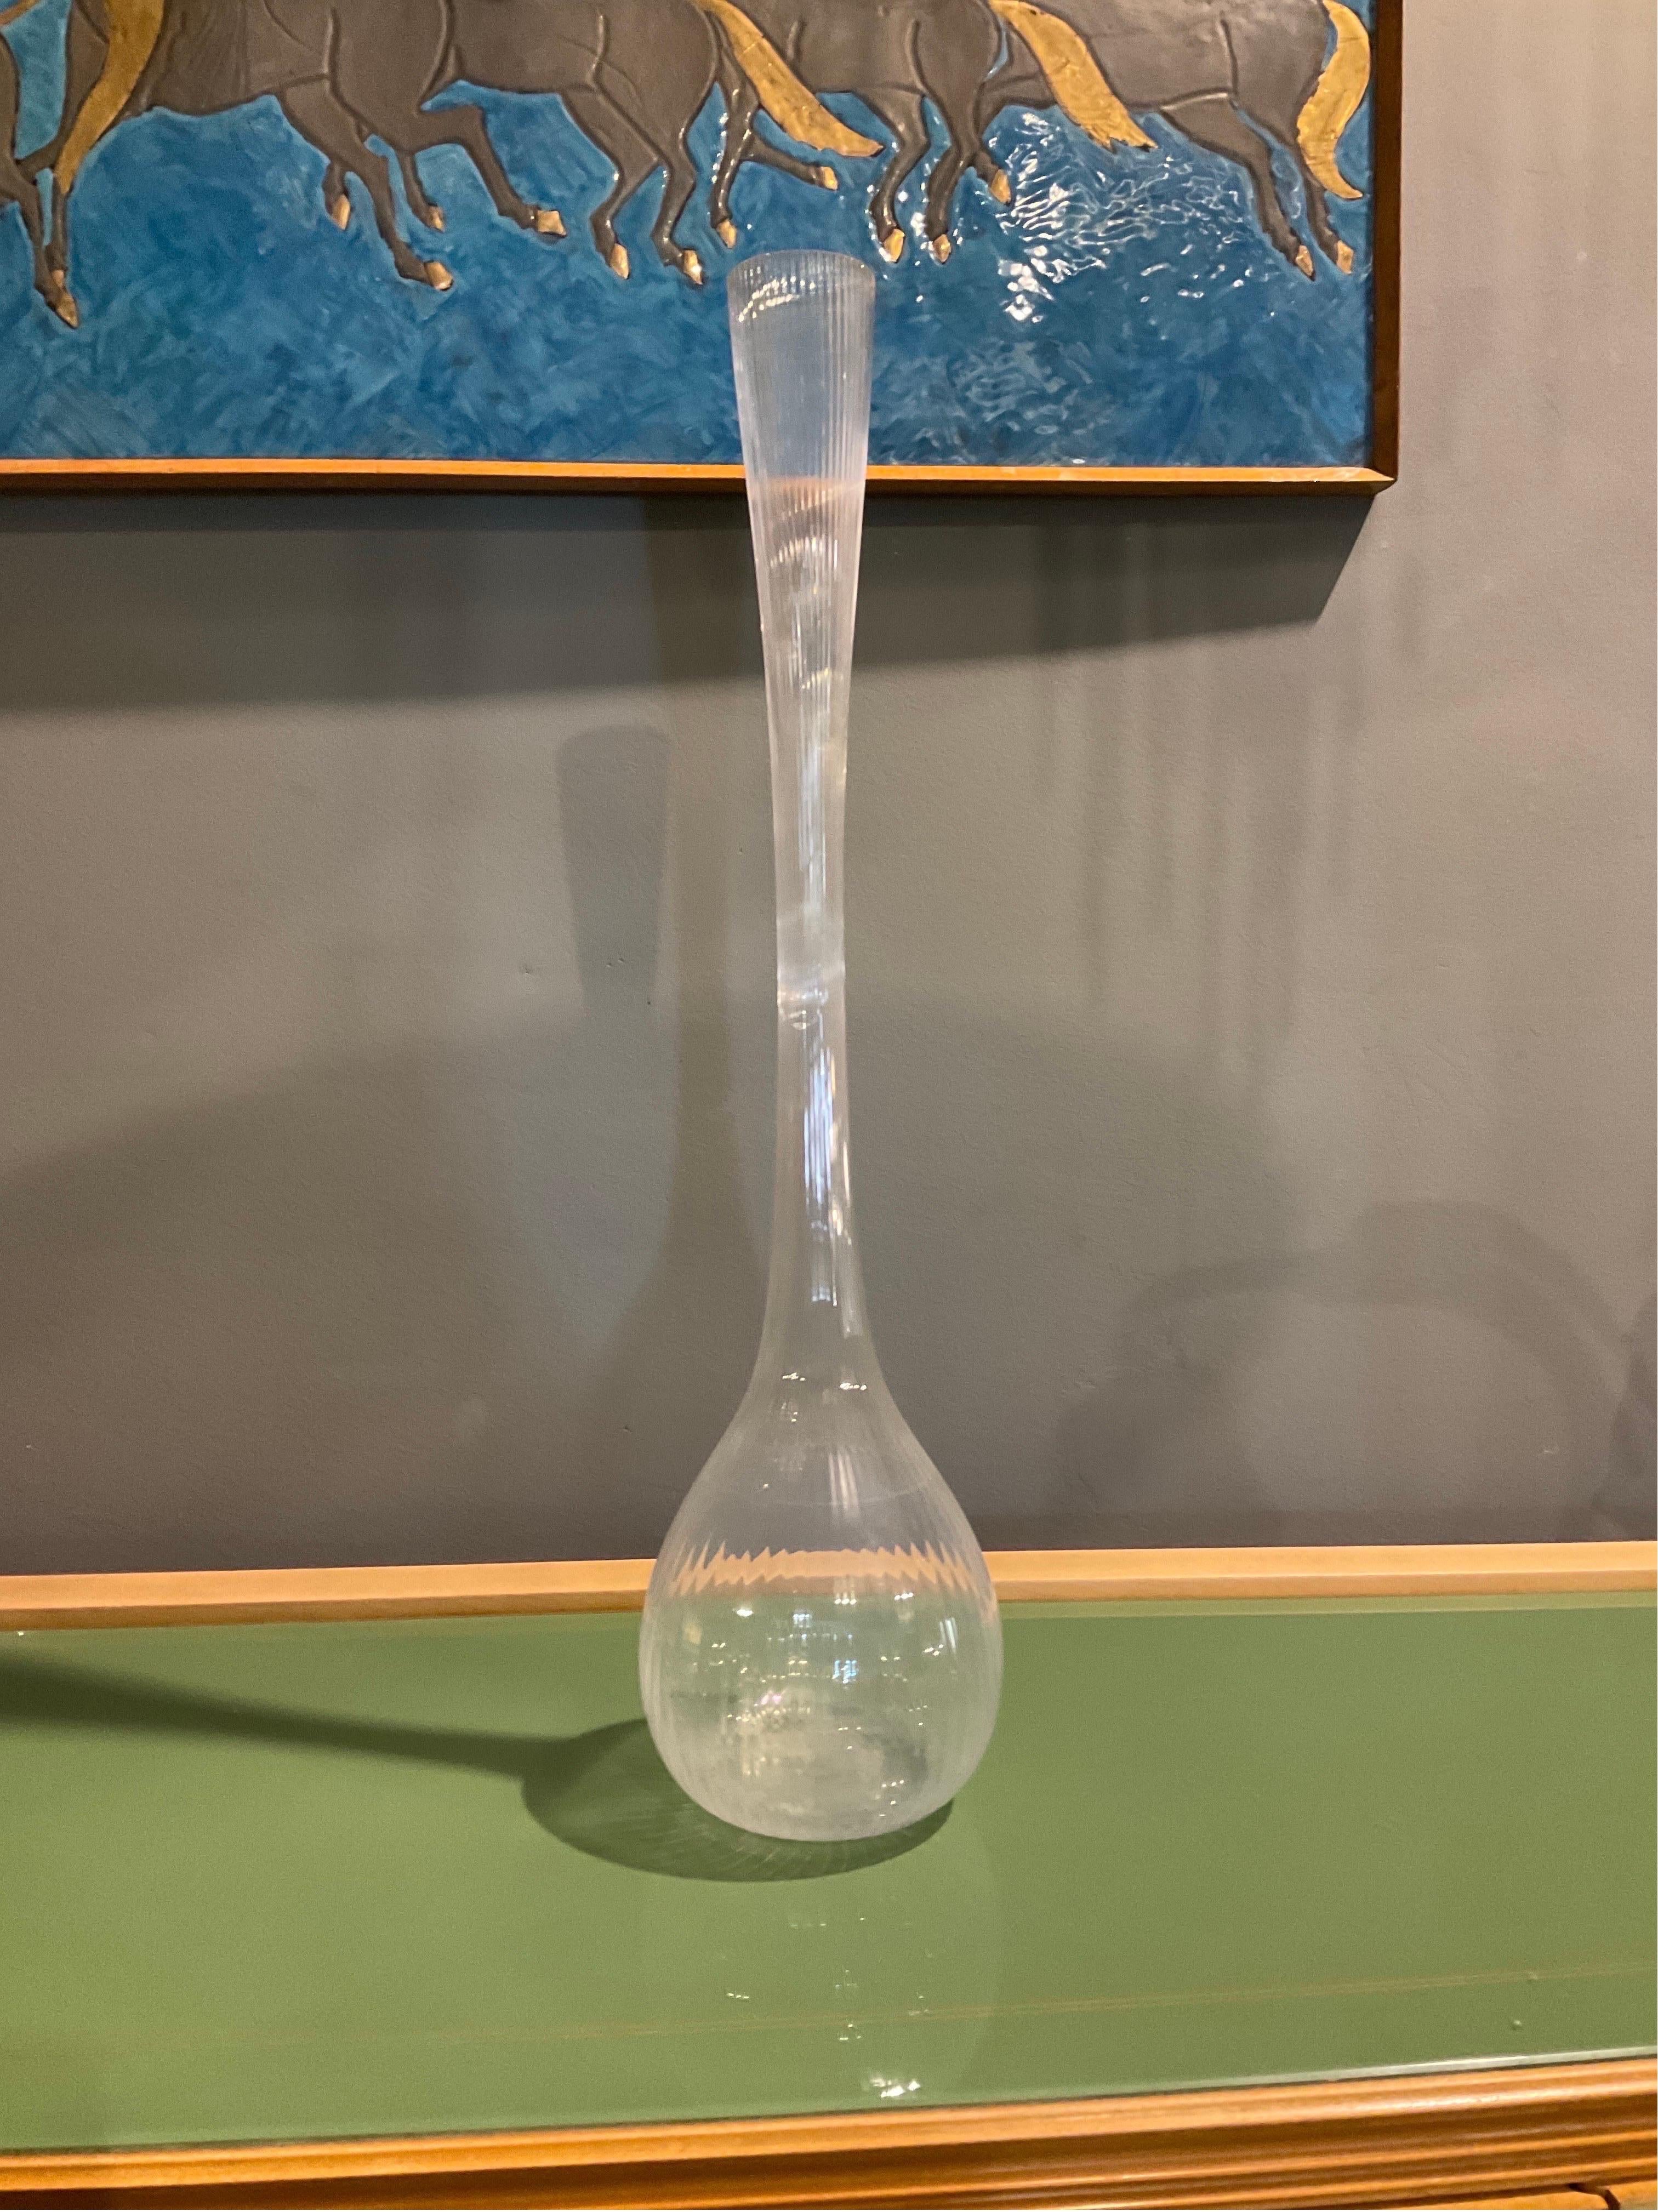 Cet élégant vase en verre a été fabriqué par le célèbre fabricant français Daum dans les années 1970. Sa forme sinueuse et élancée est un parfait exemple du style, et le verre transparent accentue ses courbes gracieuses. Le design à la fois simple